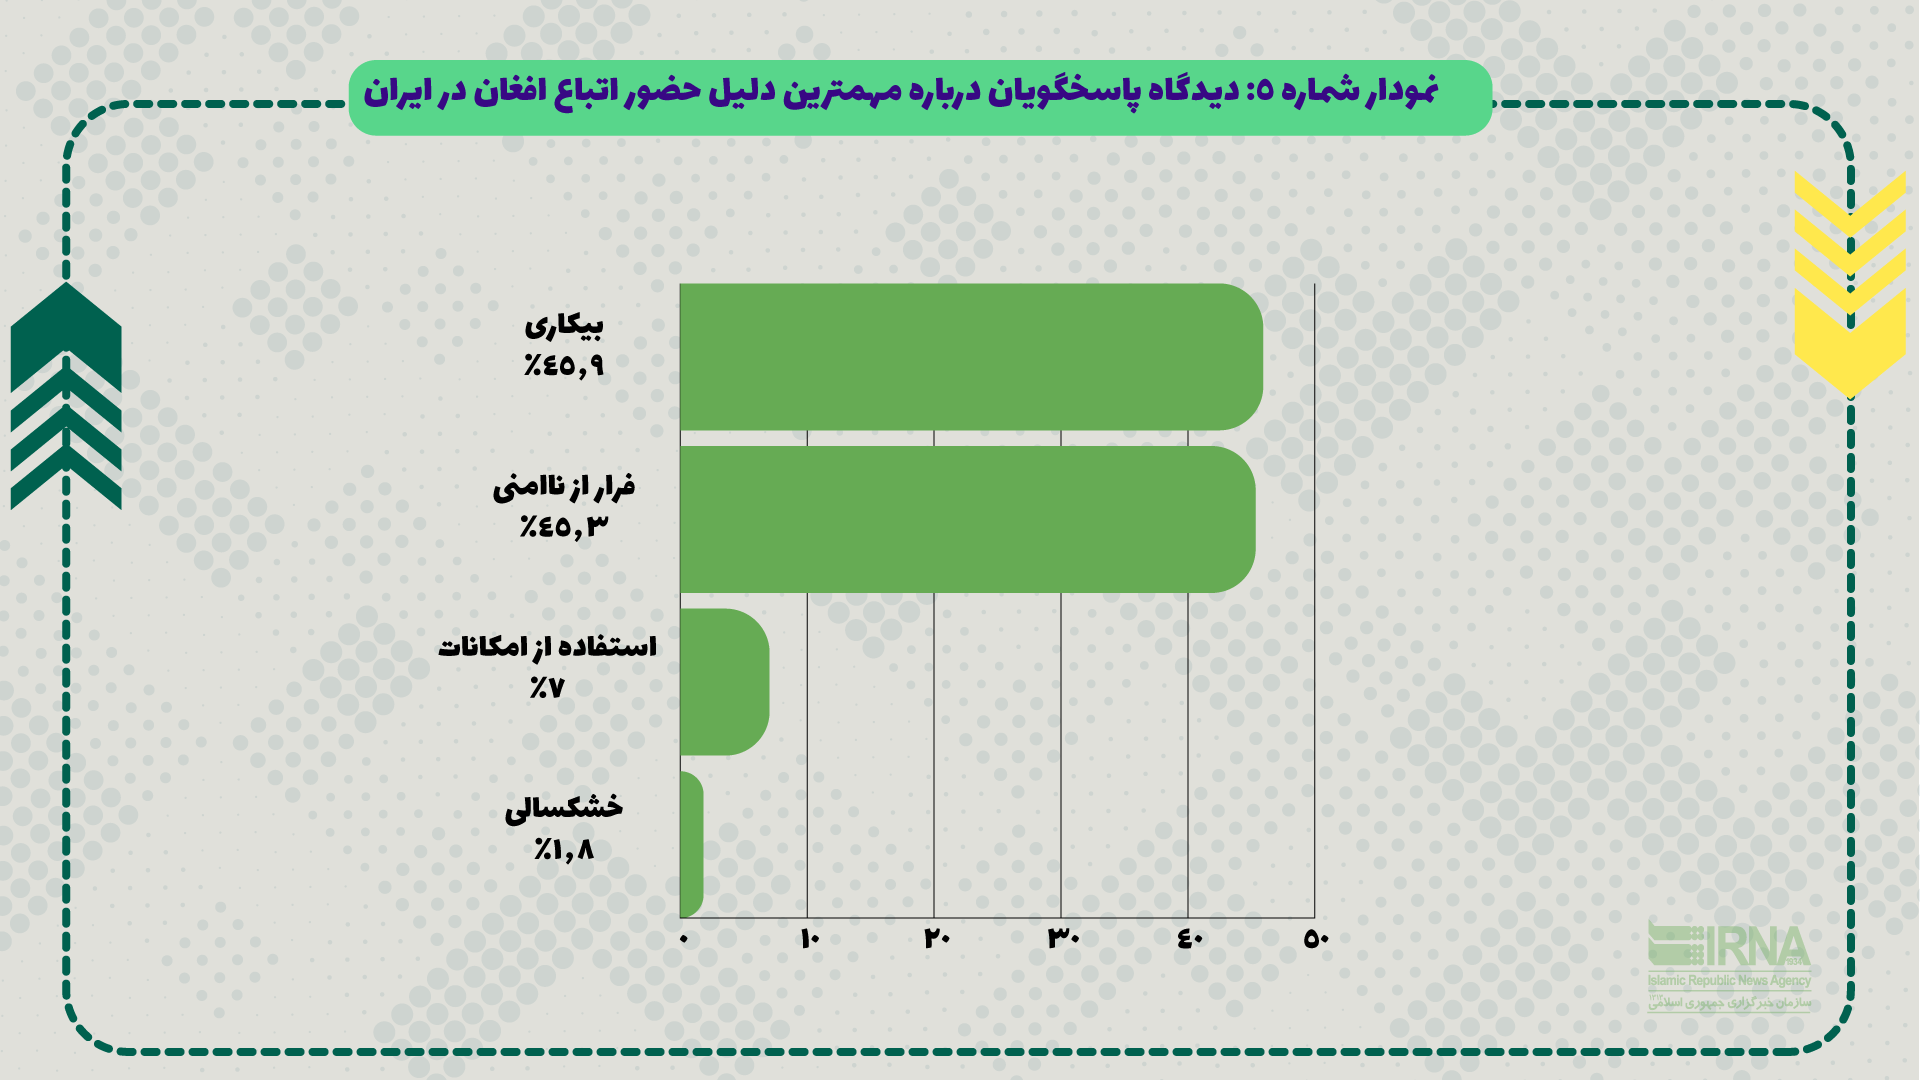 ۴۲.۸ درصد از تهرانی‌ها، مهاجران افغان را عامل بروز مشکلات شغلی برای ایرانیان می‌دانند